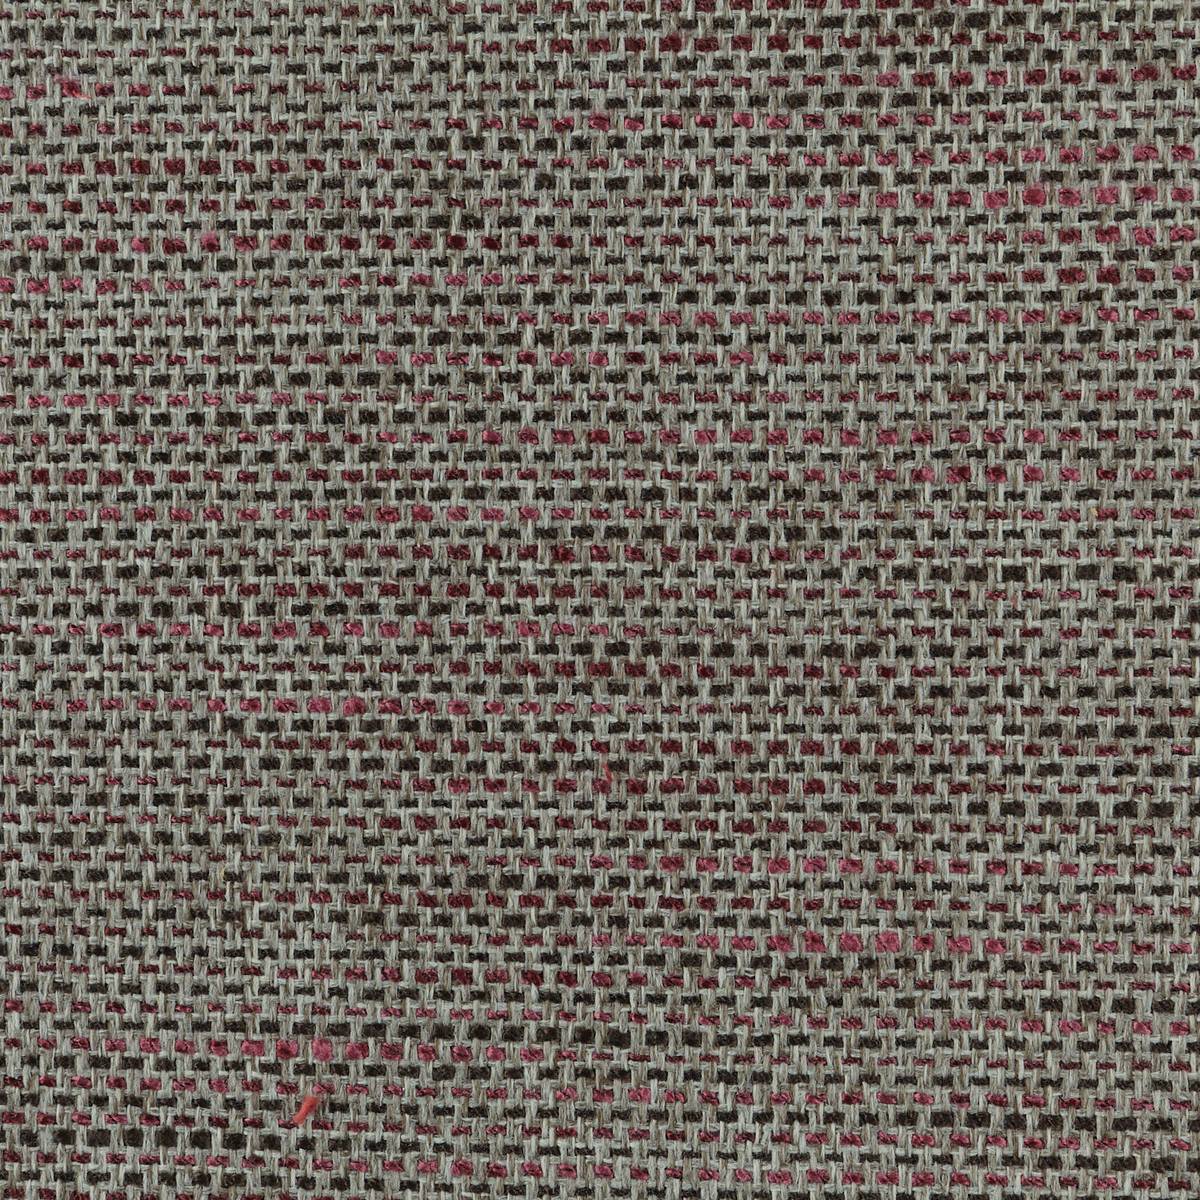 Rhythmic Enigma Fabric by Harlequin